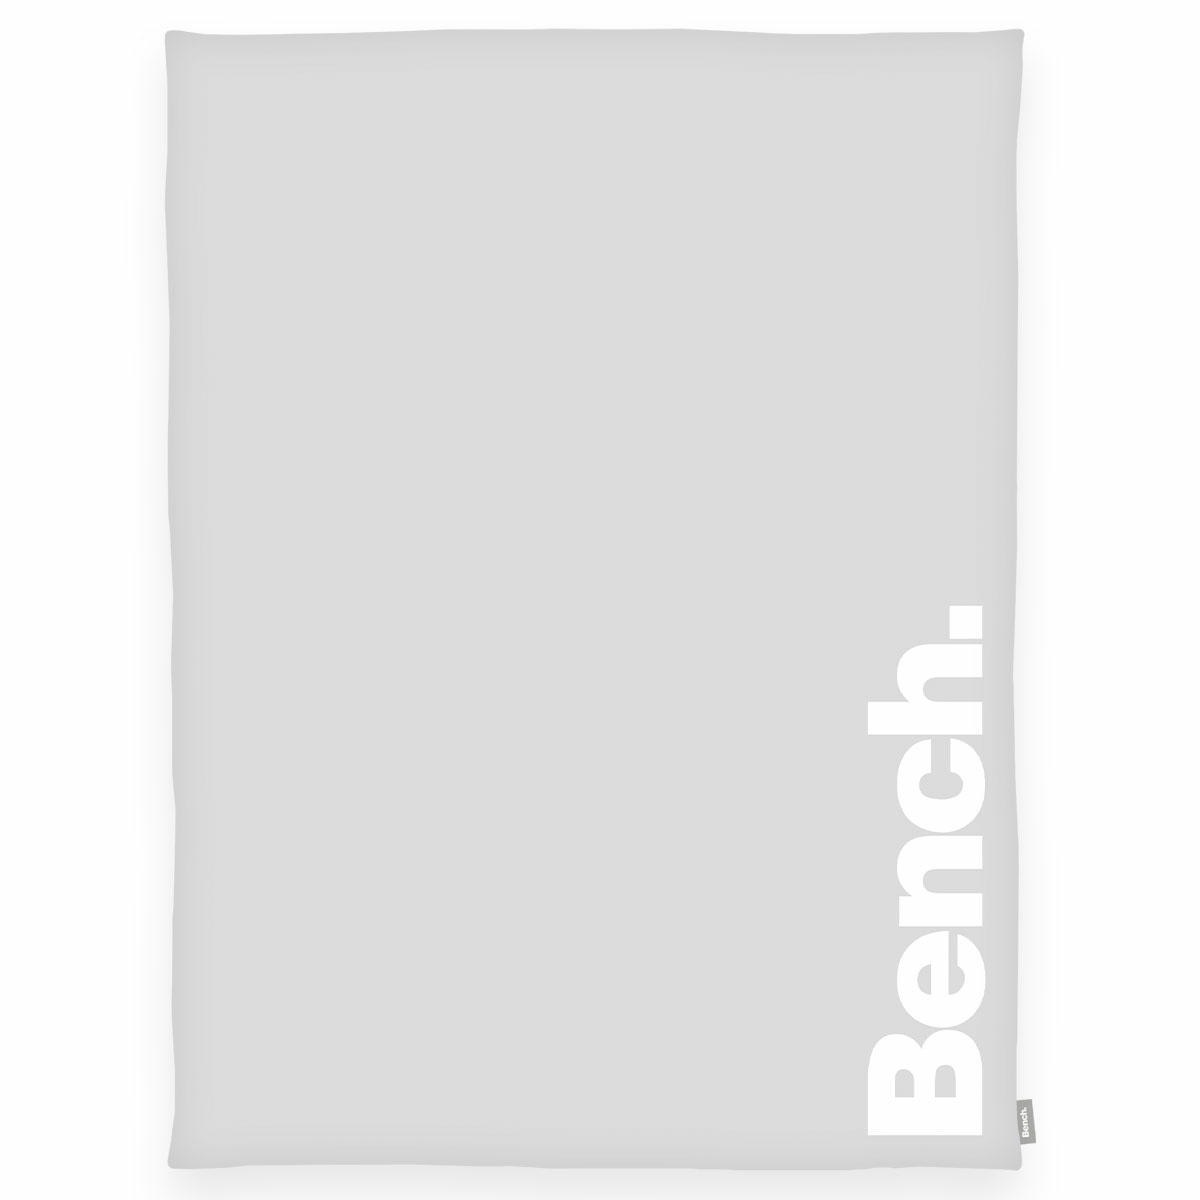 Bench Deka světle šedá, 150 x 200 cm